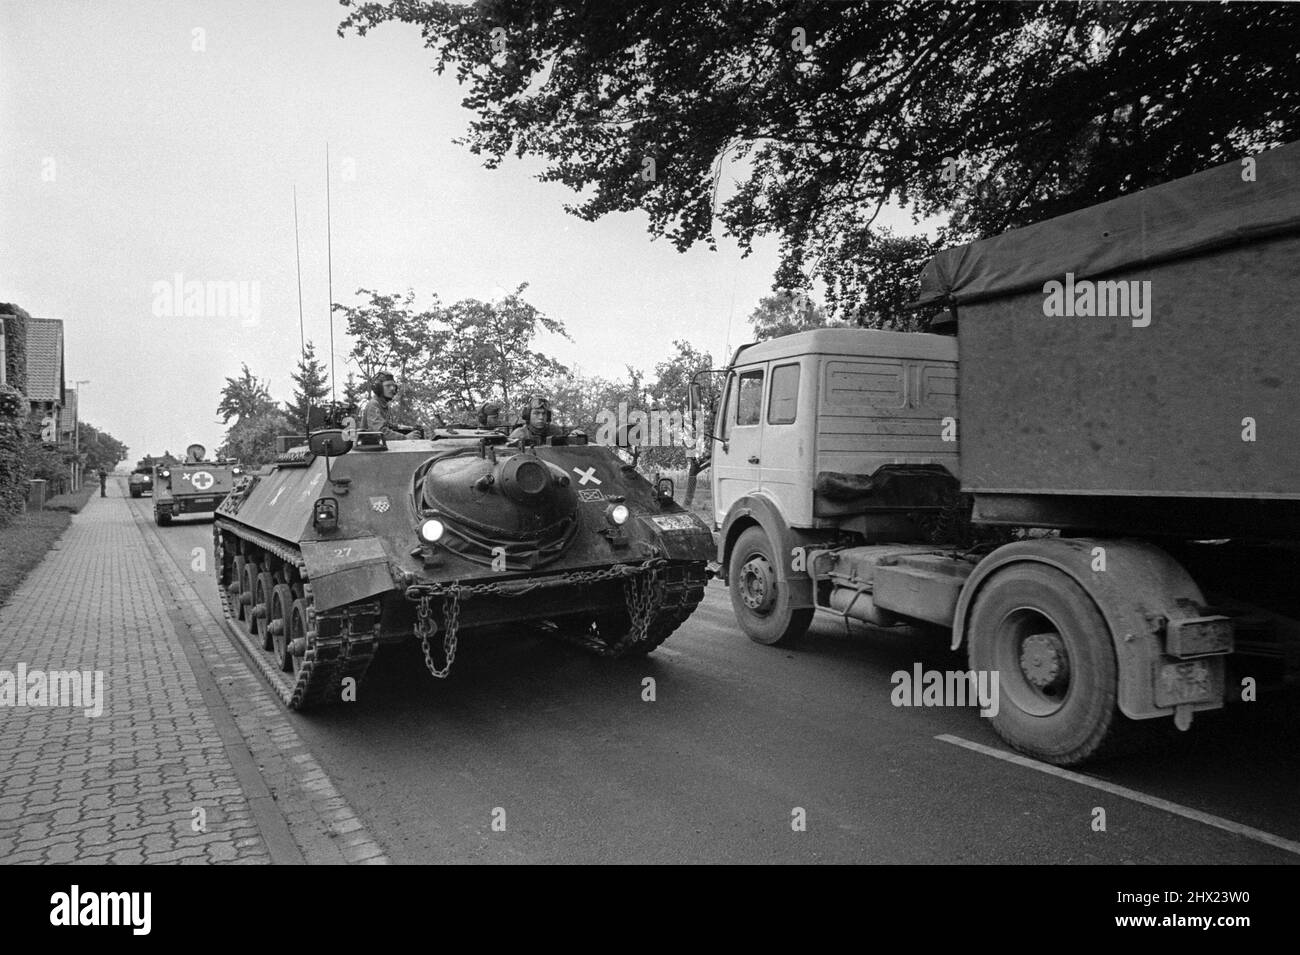 - NATO exercises in Germany, German Army armoured reconaissance vehicle   (October 1988)   - esercitazioni NATO in Germania, veicolo corazzato da ricognizione dell'esercito tedesco  (ottobre 1988) Stock Photo